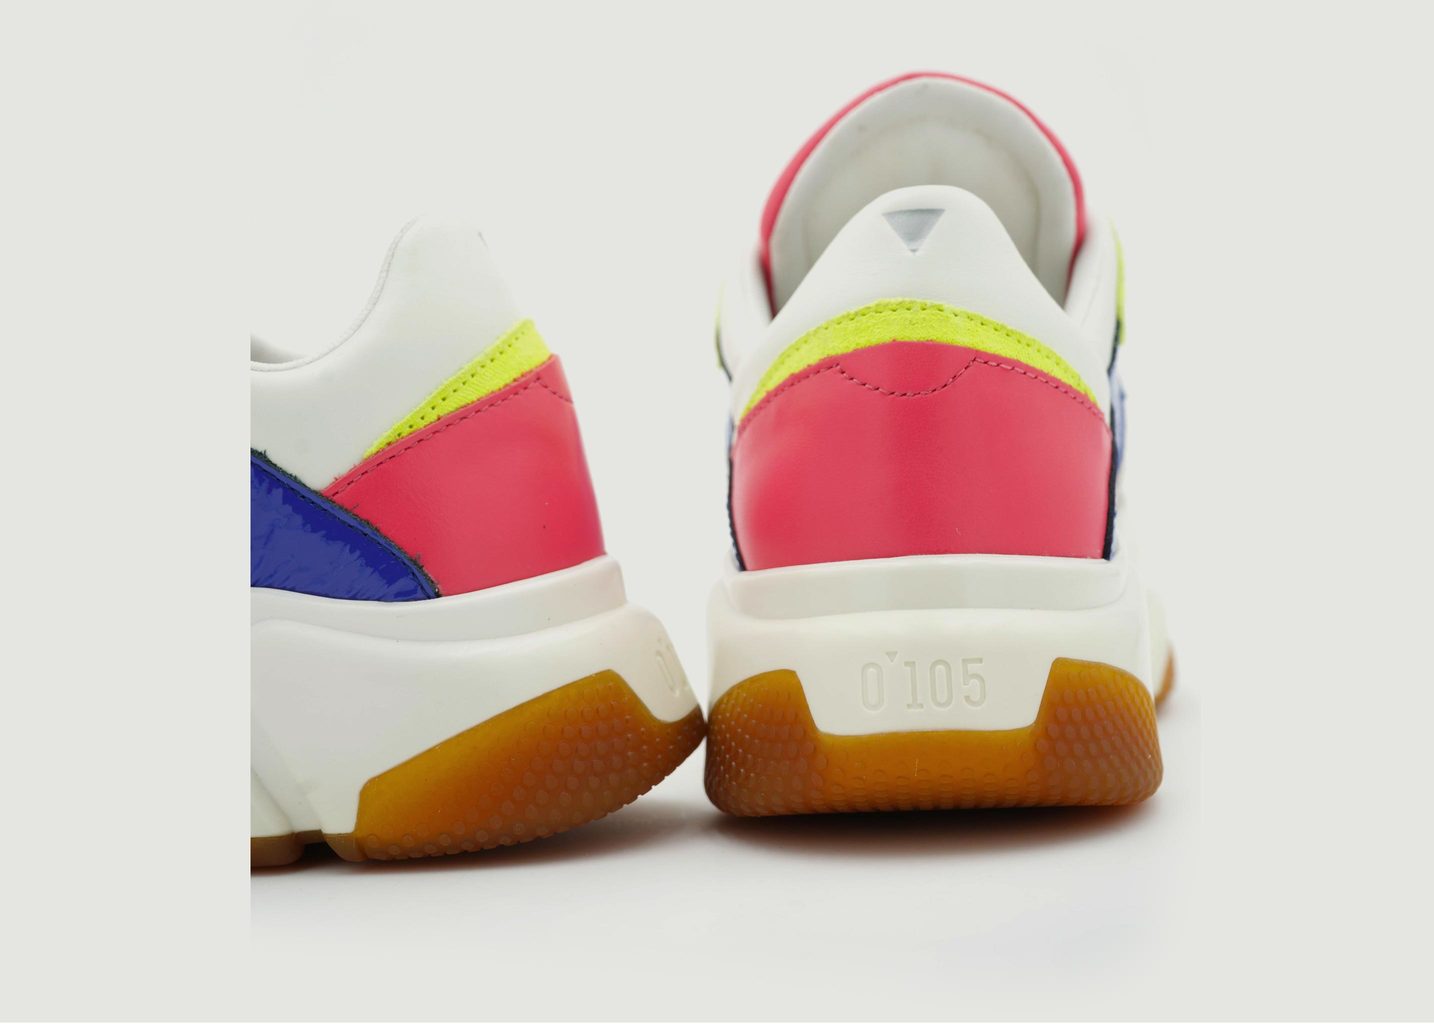 Trek-ix multi-material sneakers - 0-105